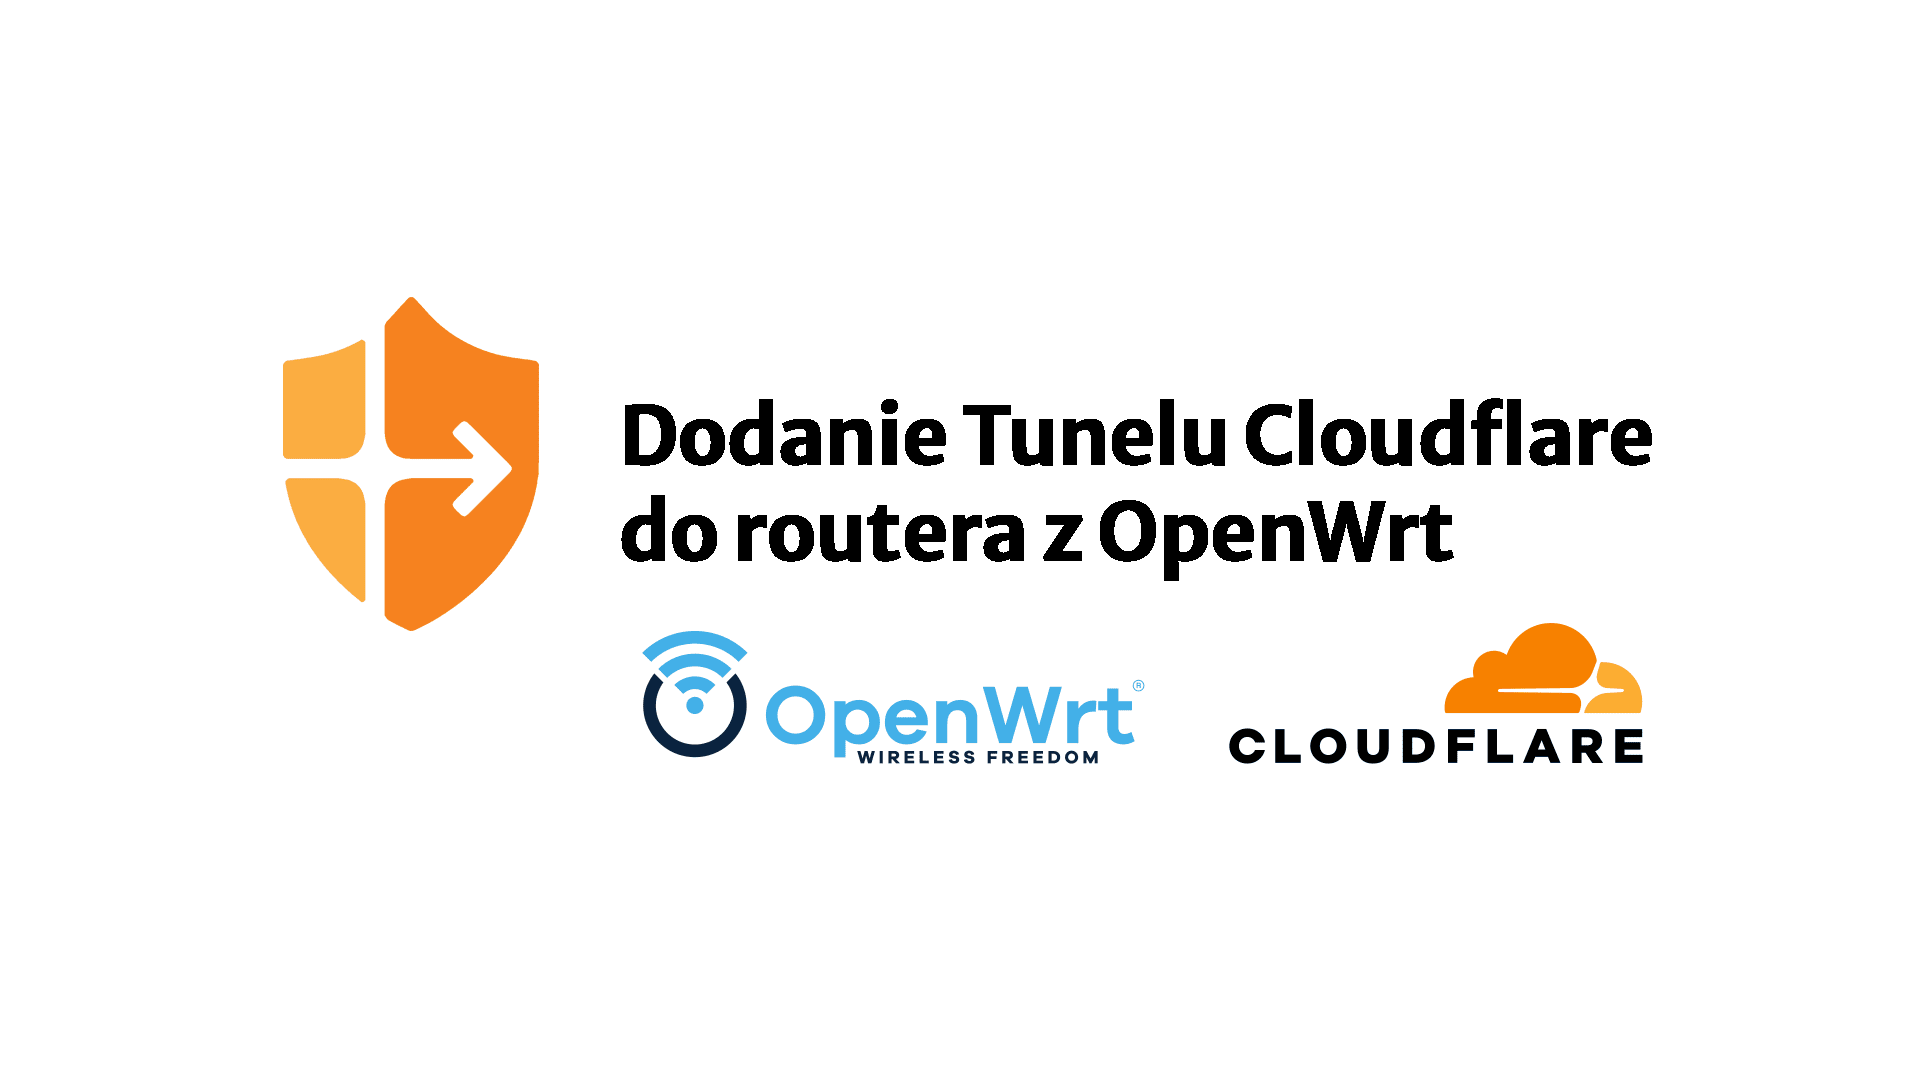 Dodanie Tunelu Cloudflare do routera z OpenWrt (alternatywa dla VPN)